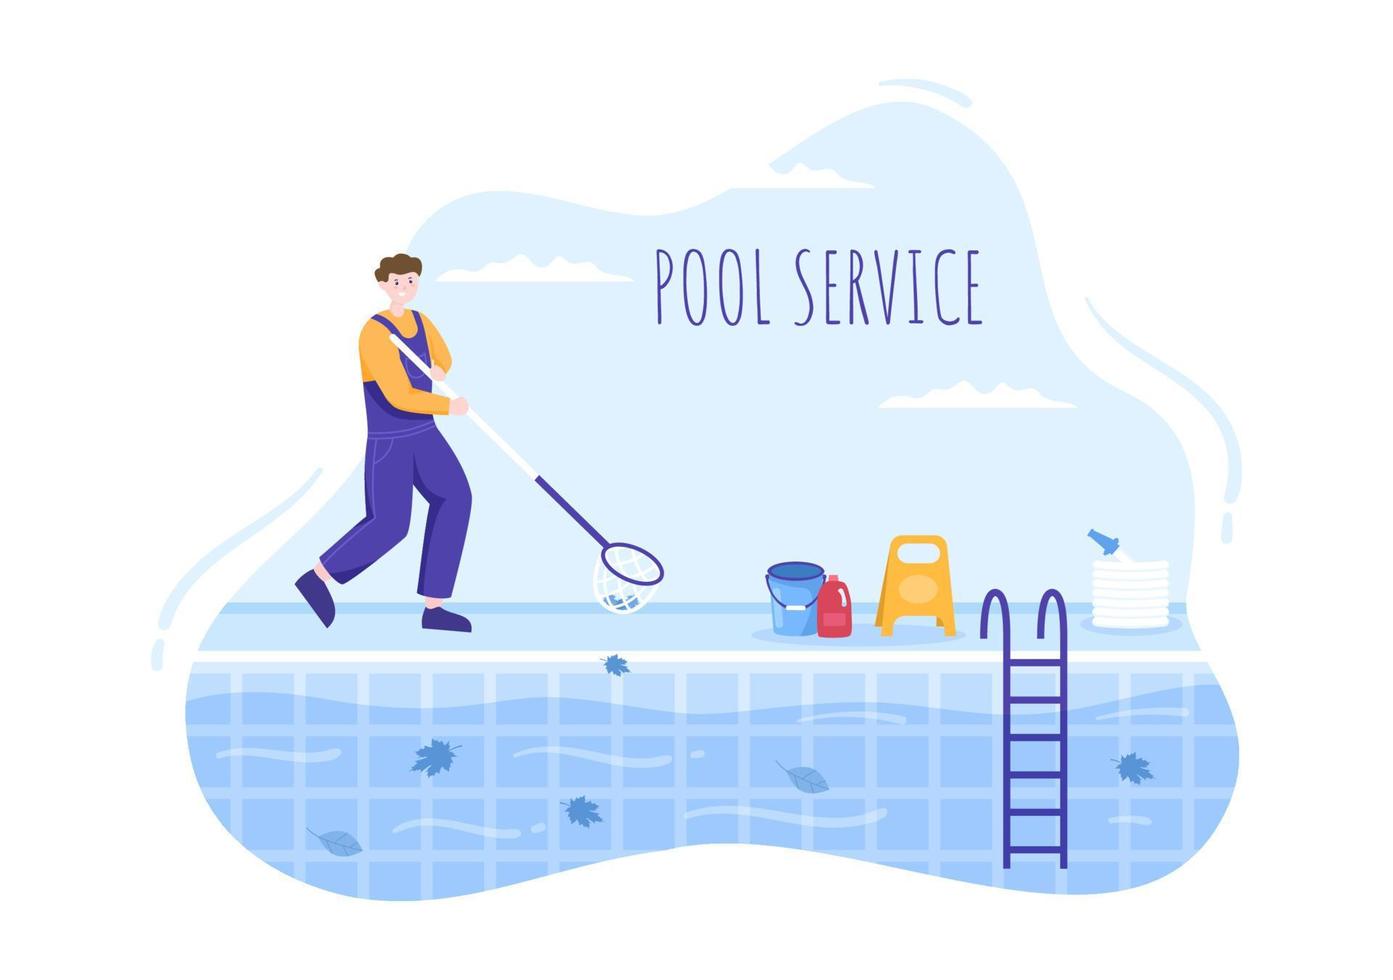 zwembadservicemedewerker met bezem, stofzuiger of net voor onderhoud en reiniging van vuil in platte cartoonillustratie vector